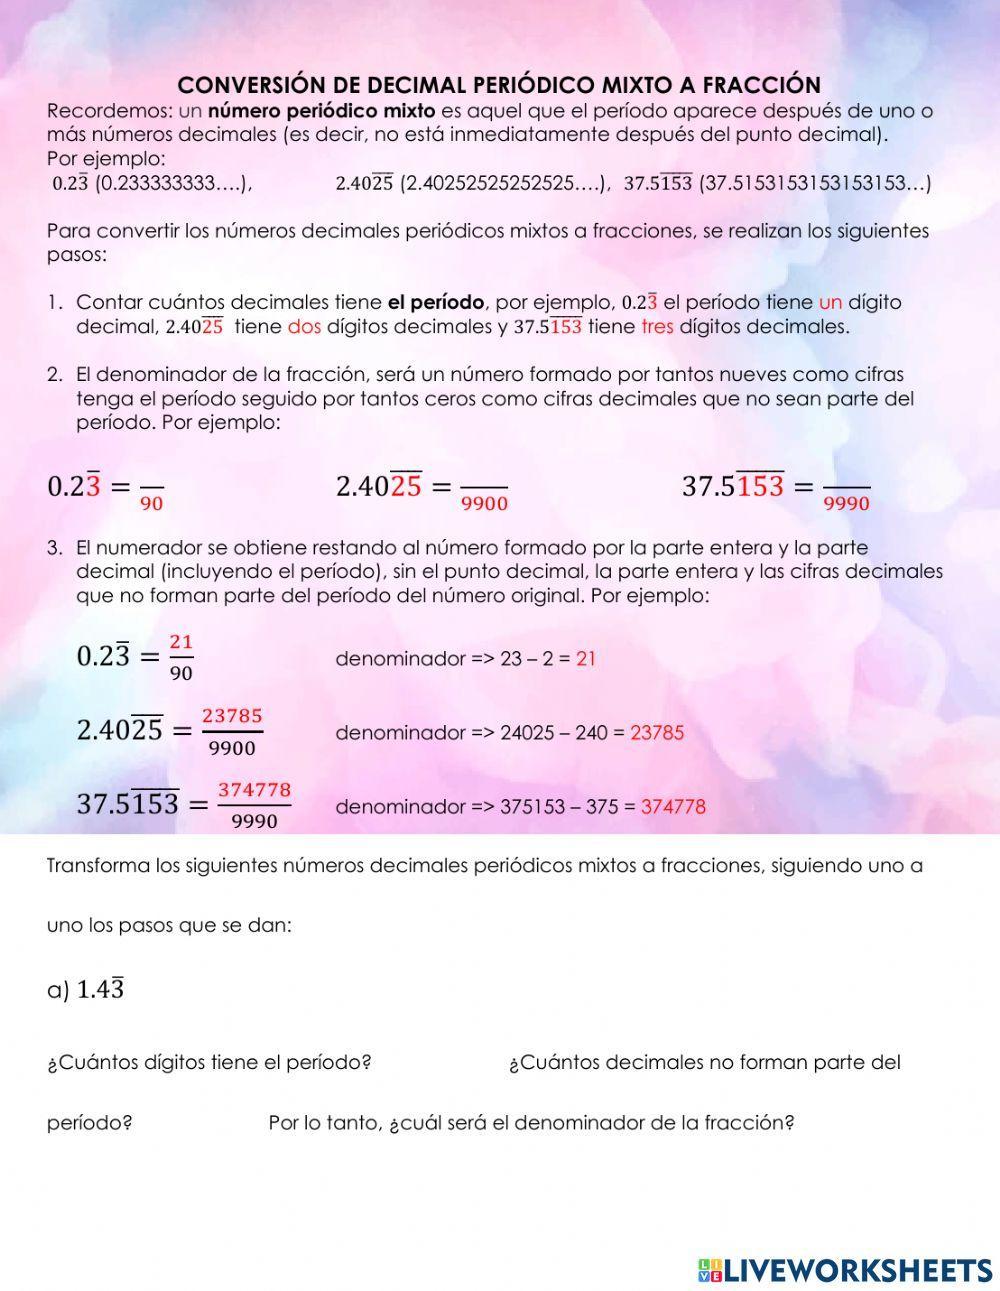 Conversión decimal periódico mixto a fracción worksheet | Live Worksheets